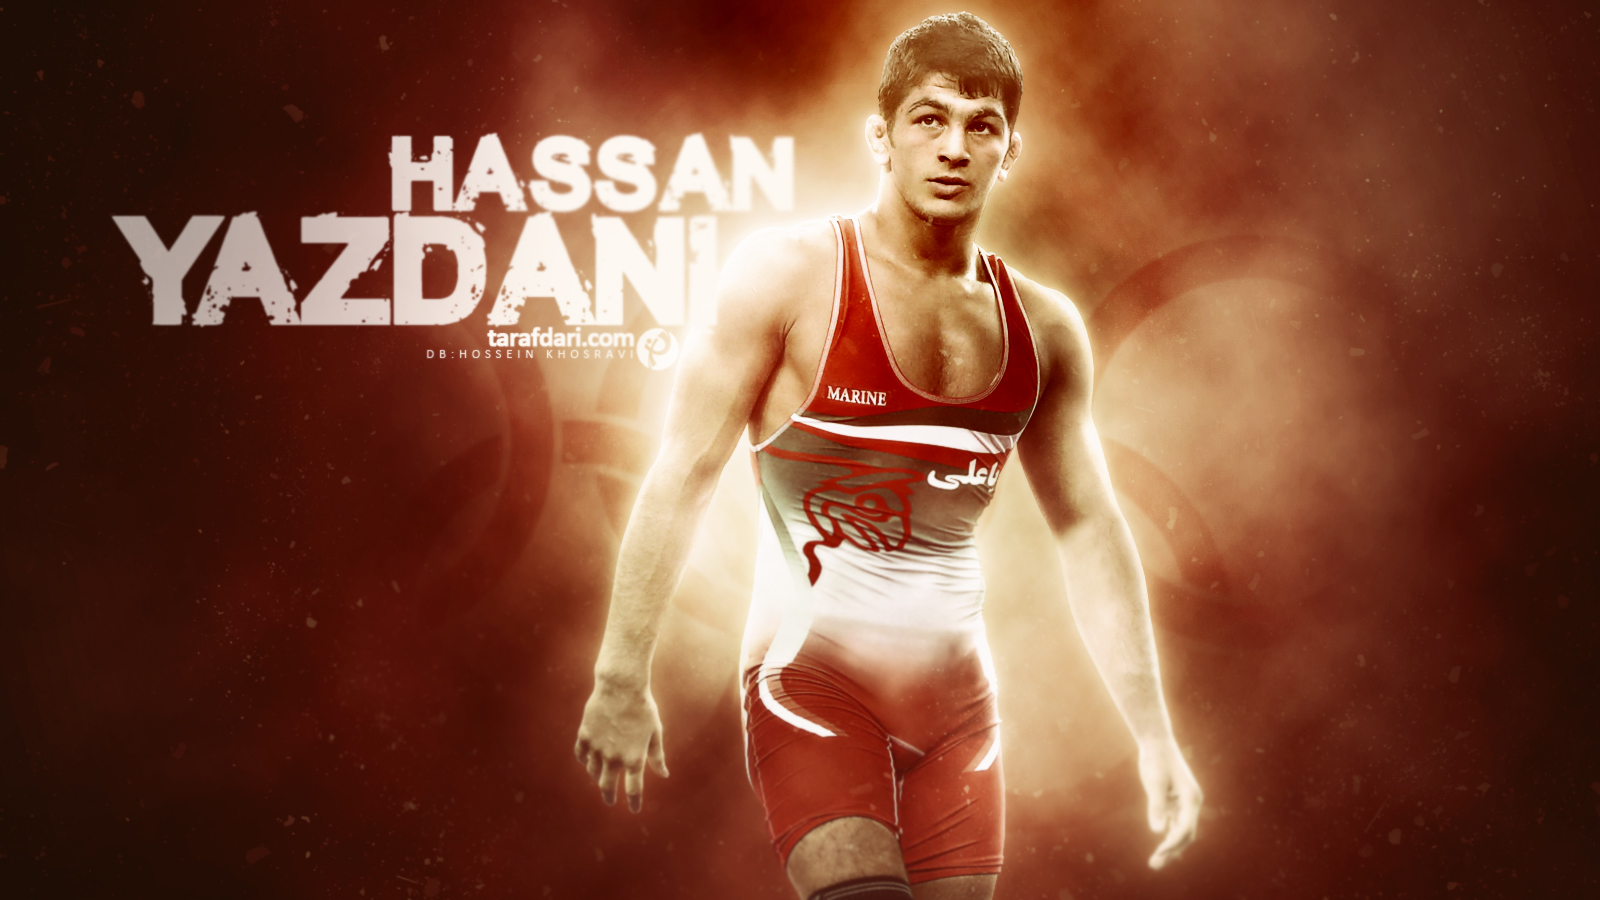 المپیک ریو 2016؛ پوستر اختصاصی طرفداری، حسن یزدانی سومین مرد طلایی کاروان ایران